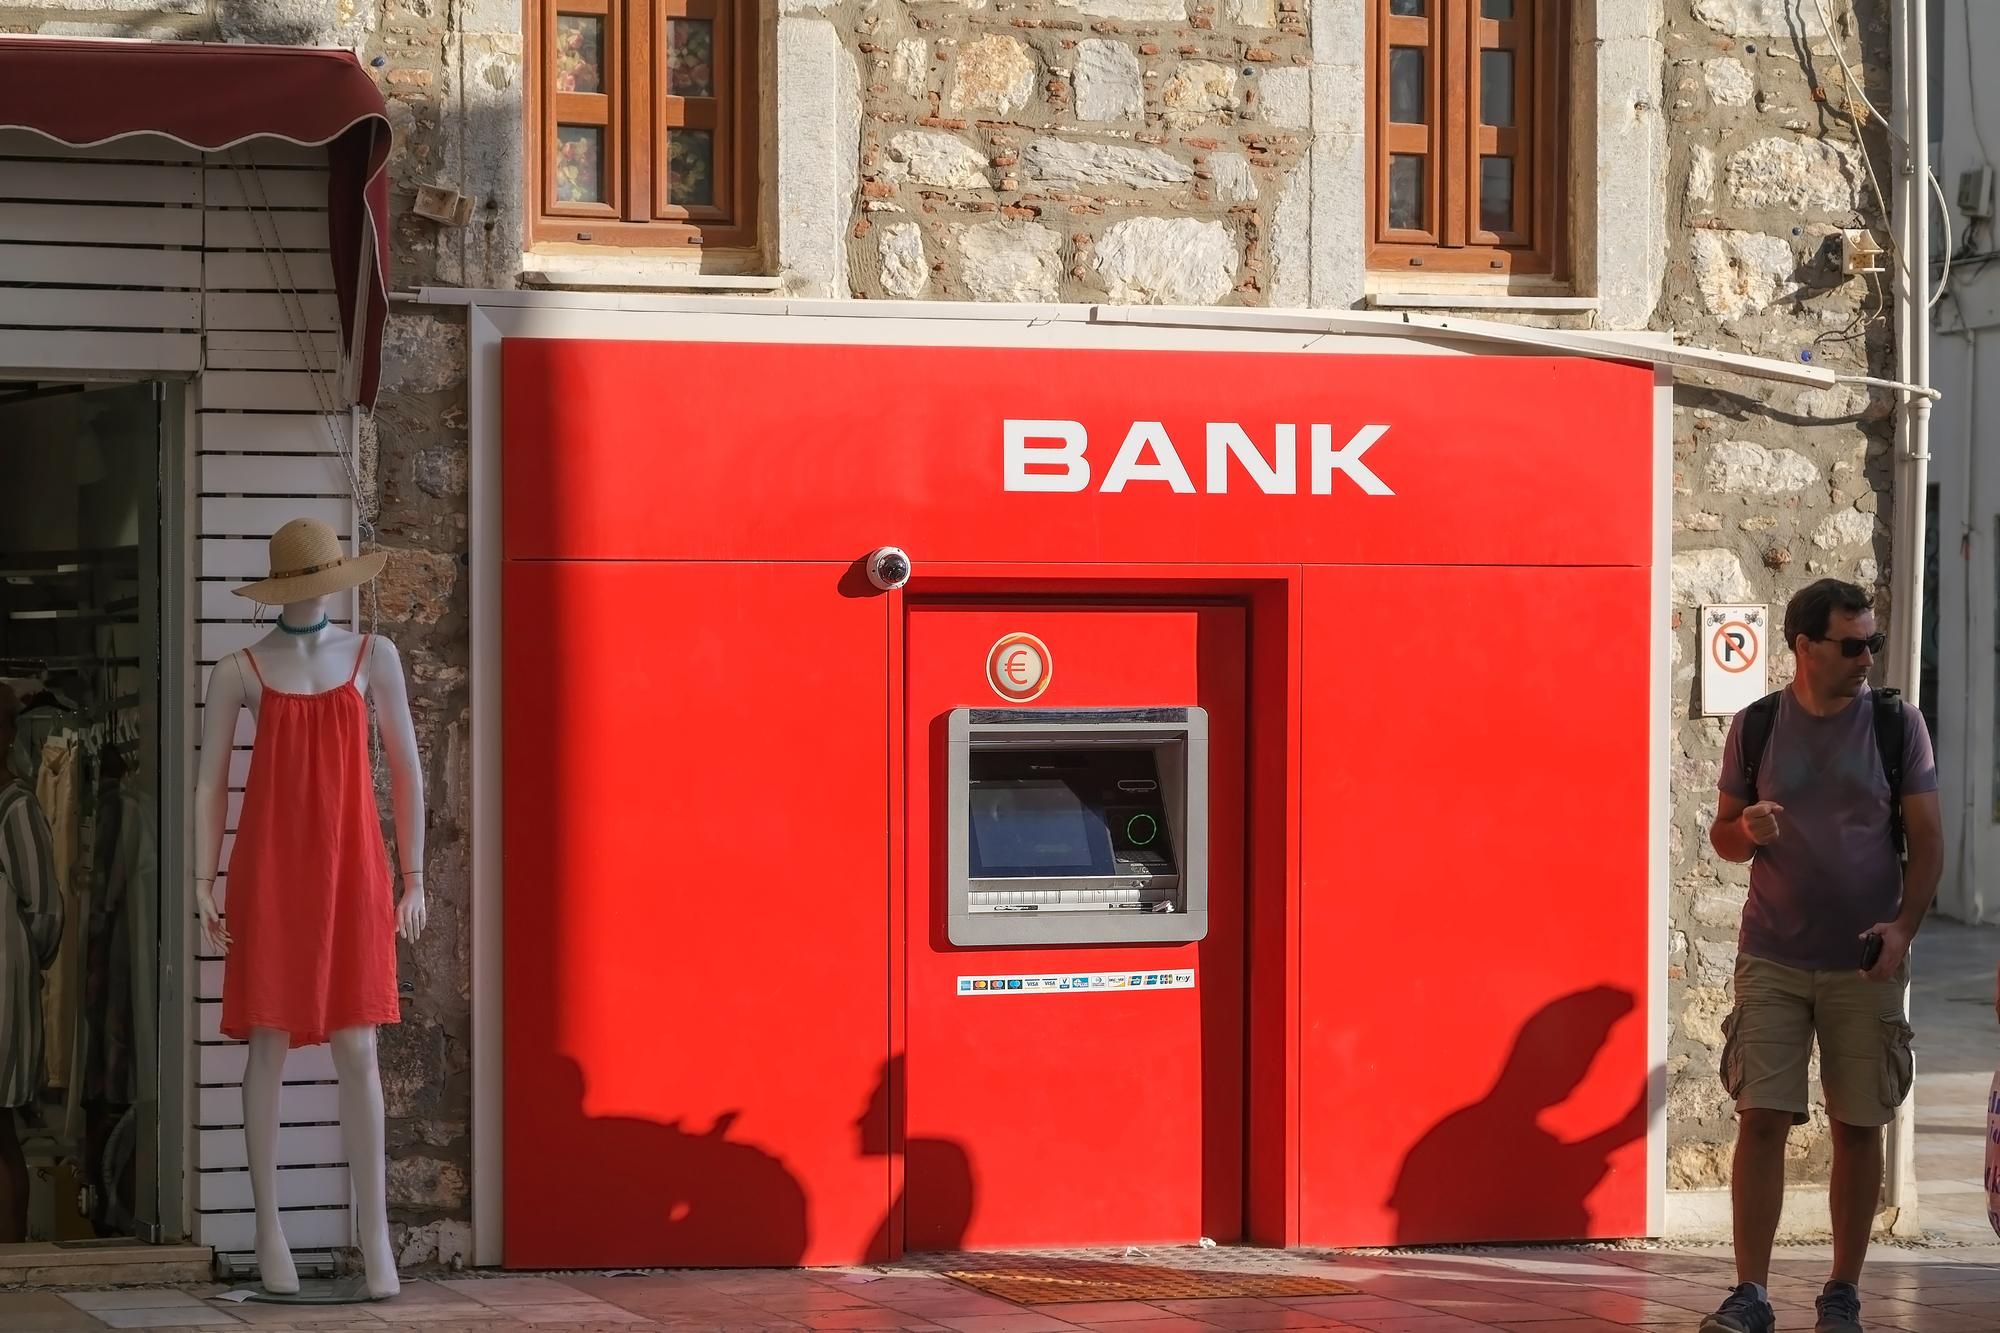 Sucursales Bancarias en Pueblos